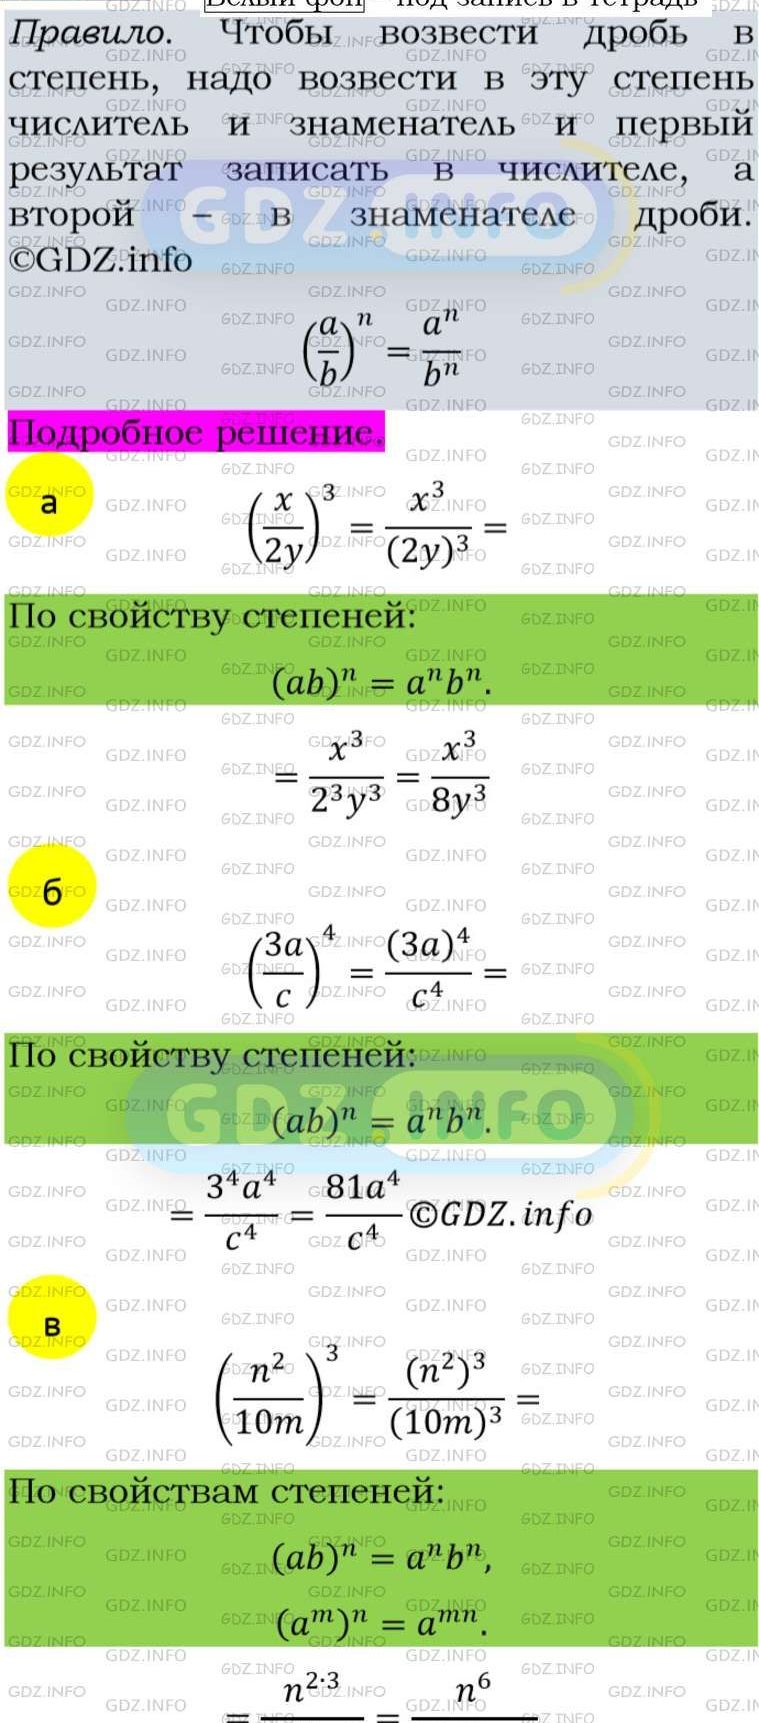 Фото подробного решения: Номер задания №117 из ГДЗ по Алгебре 8 класс: Макарычев Ю.Н.